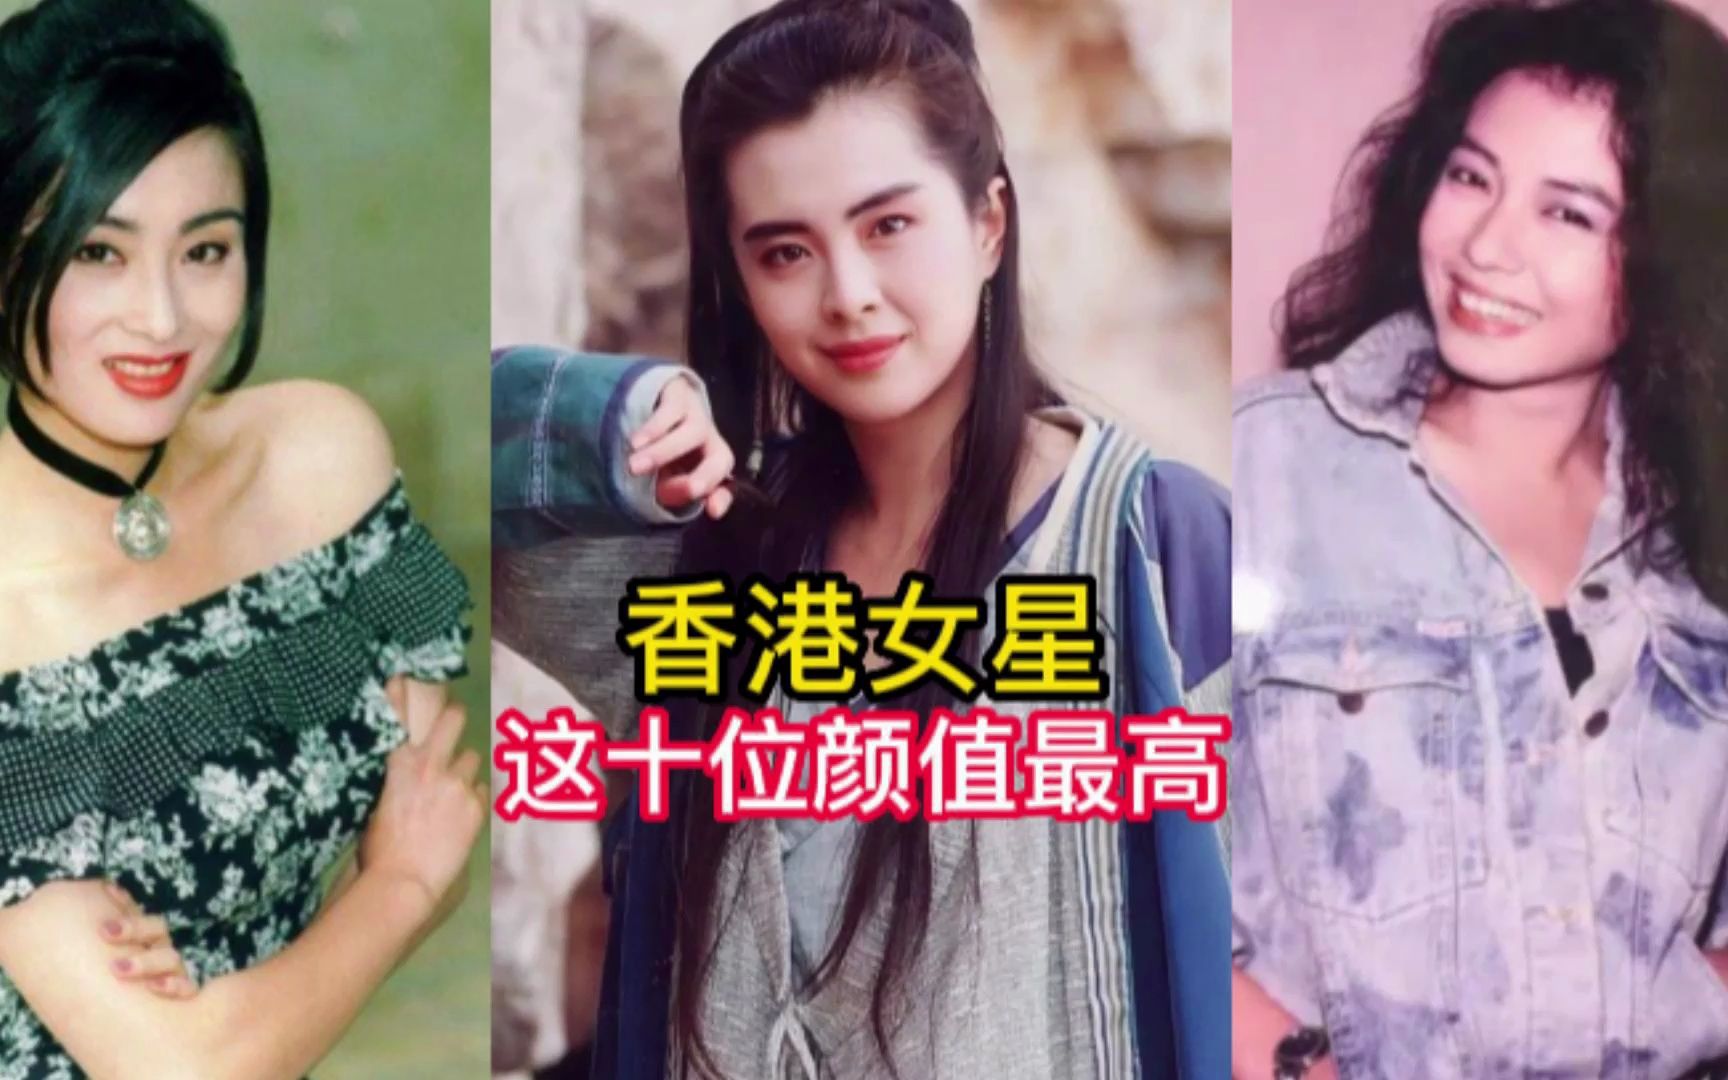 香港女星排行榜图片